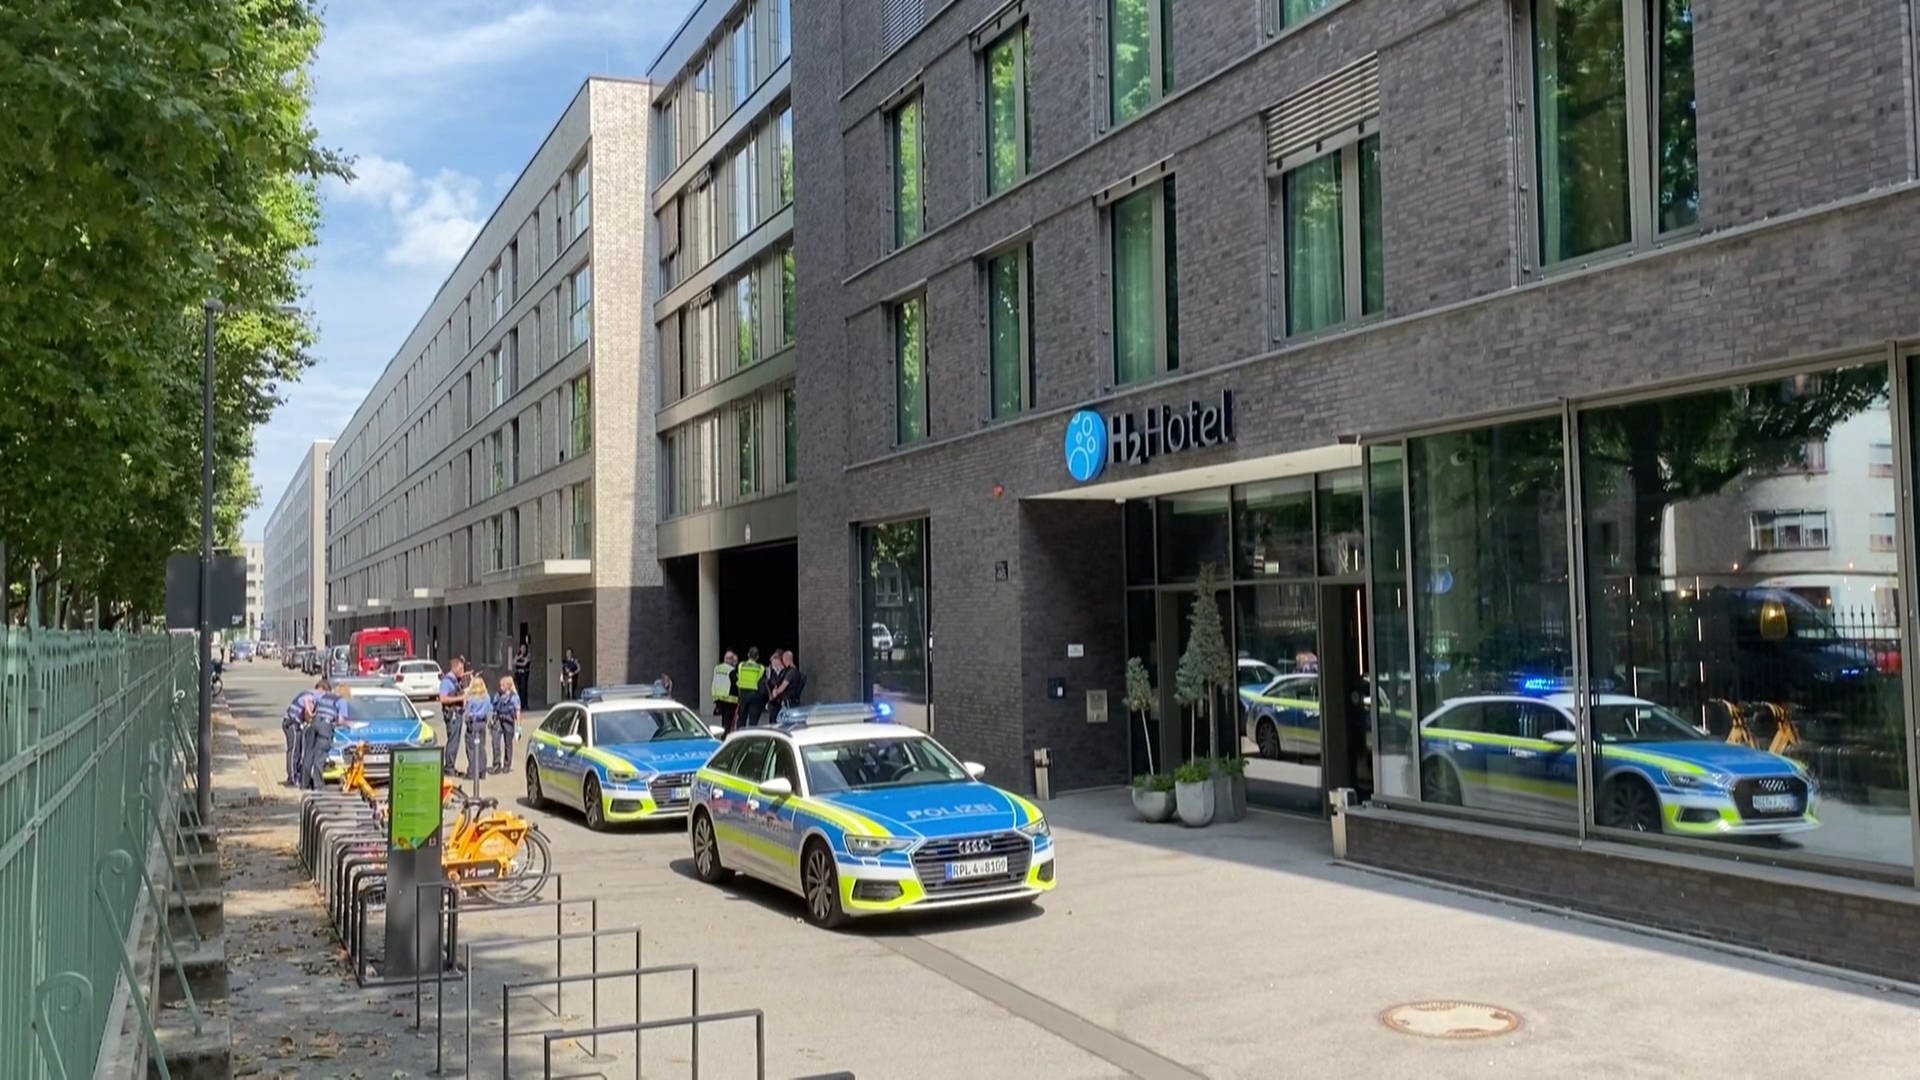 Tot aufgefundene Frau in Mainzer Hotel war dort Reinigungskraft